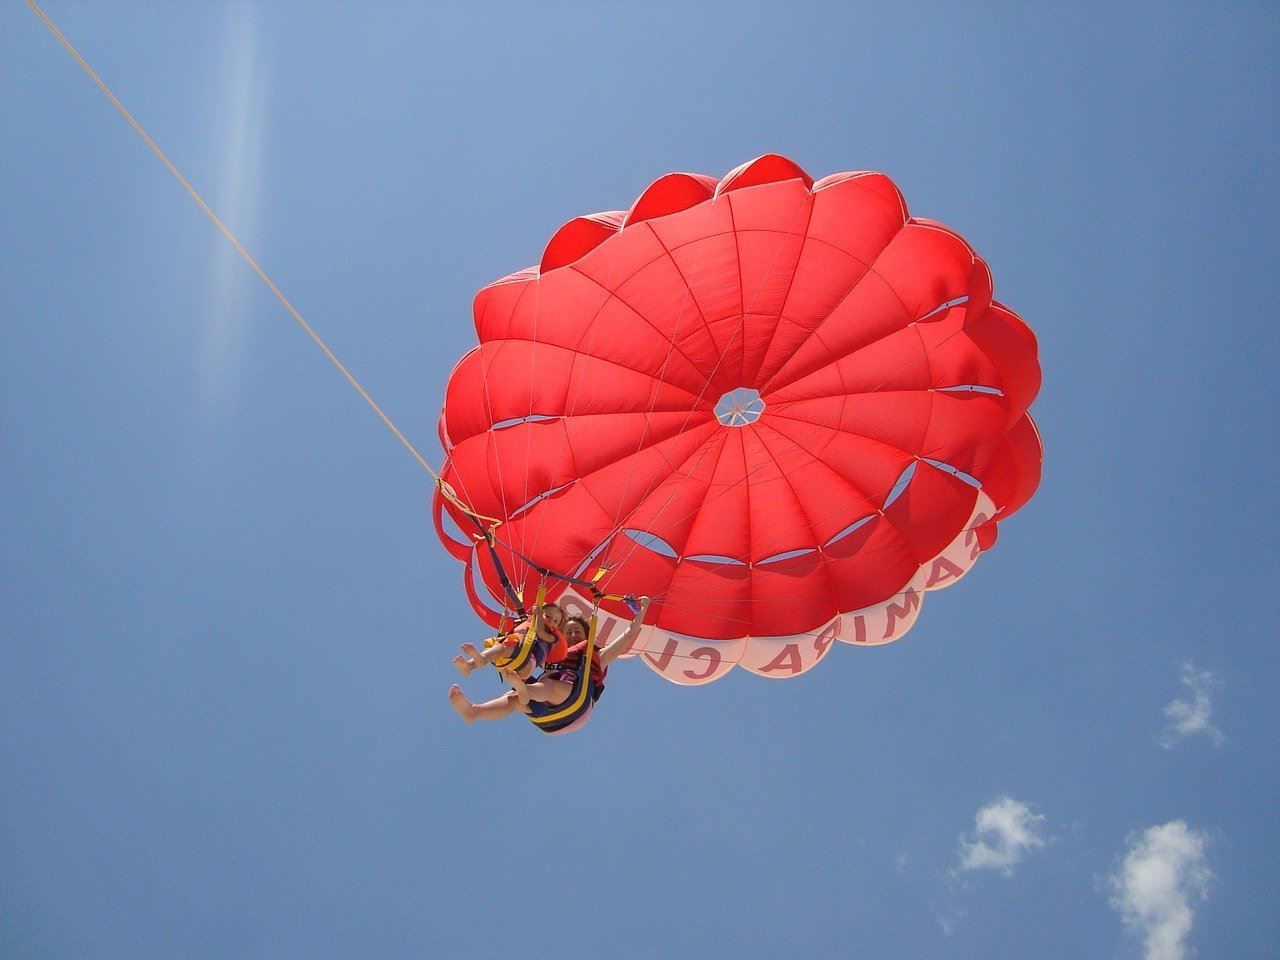 Image of child parachuting